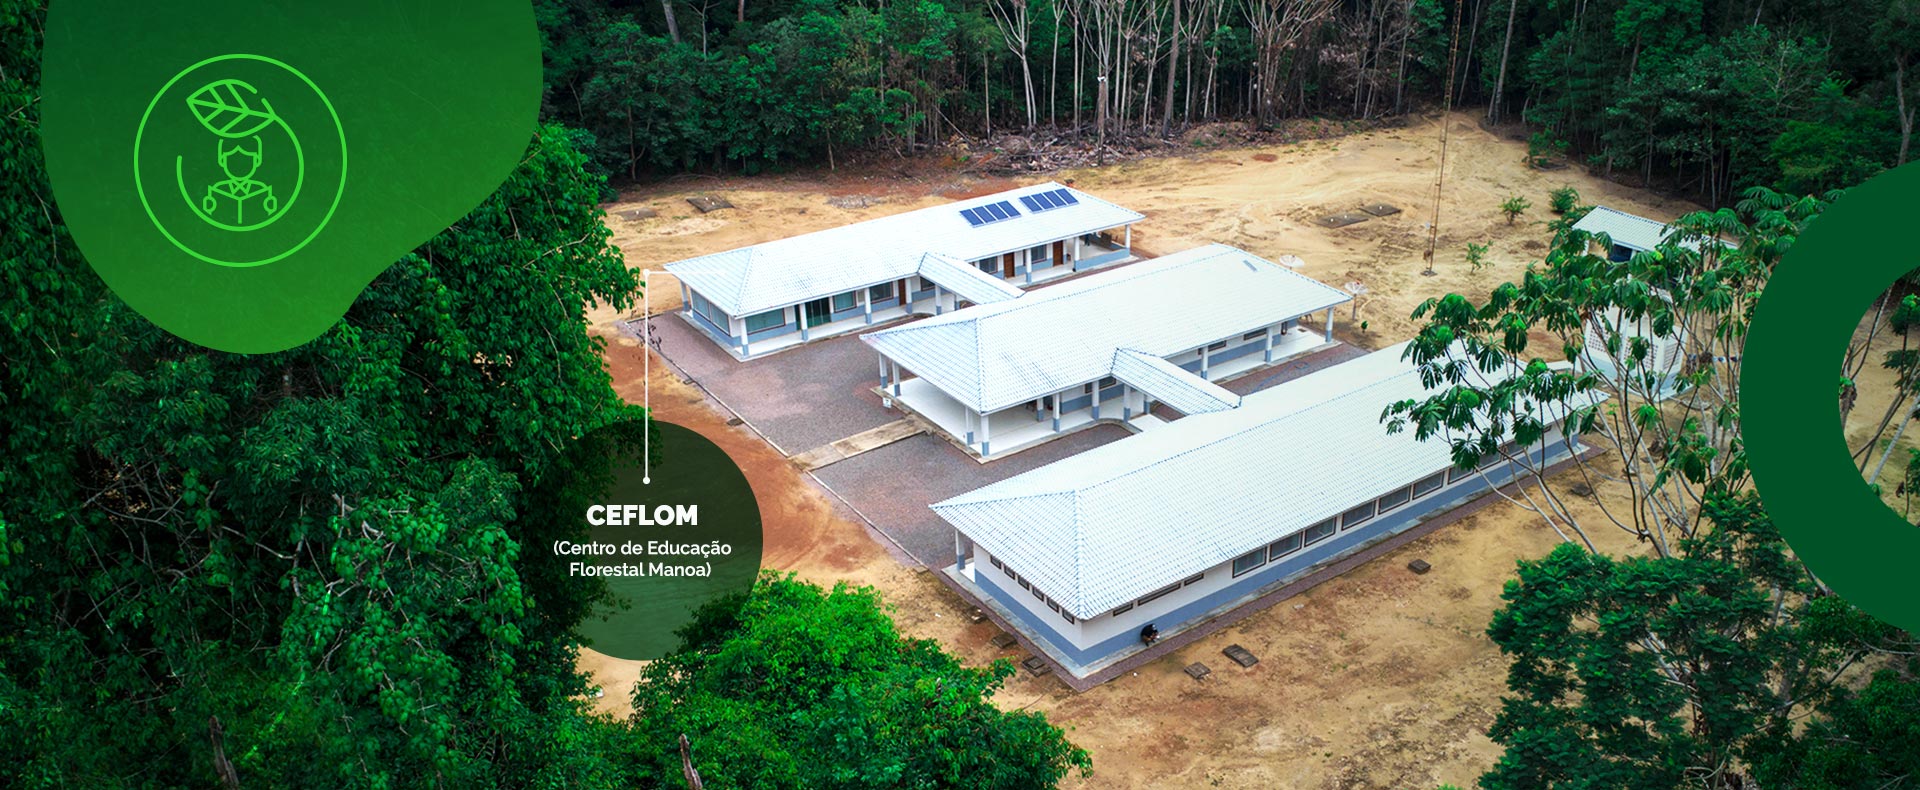 CEFLOM - Centro de Educação Florestal Manoa